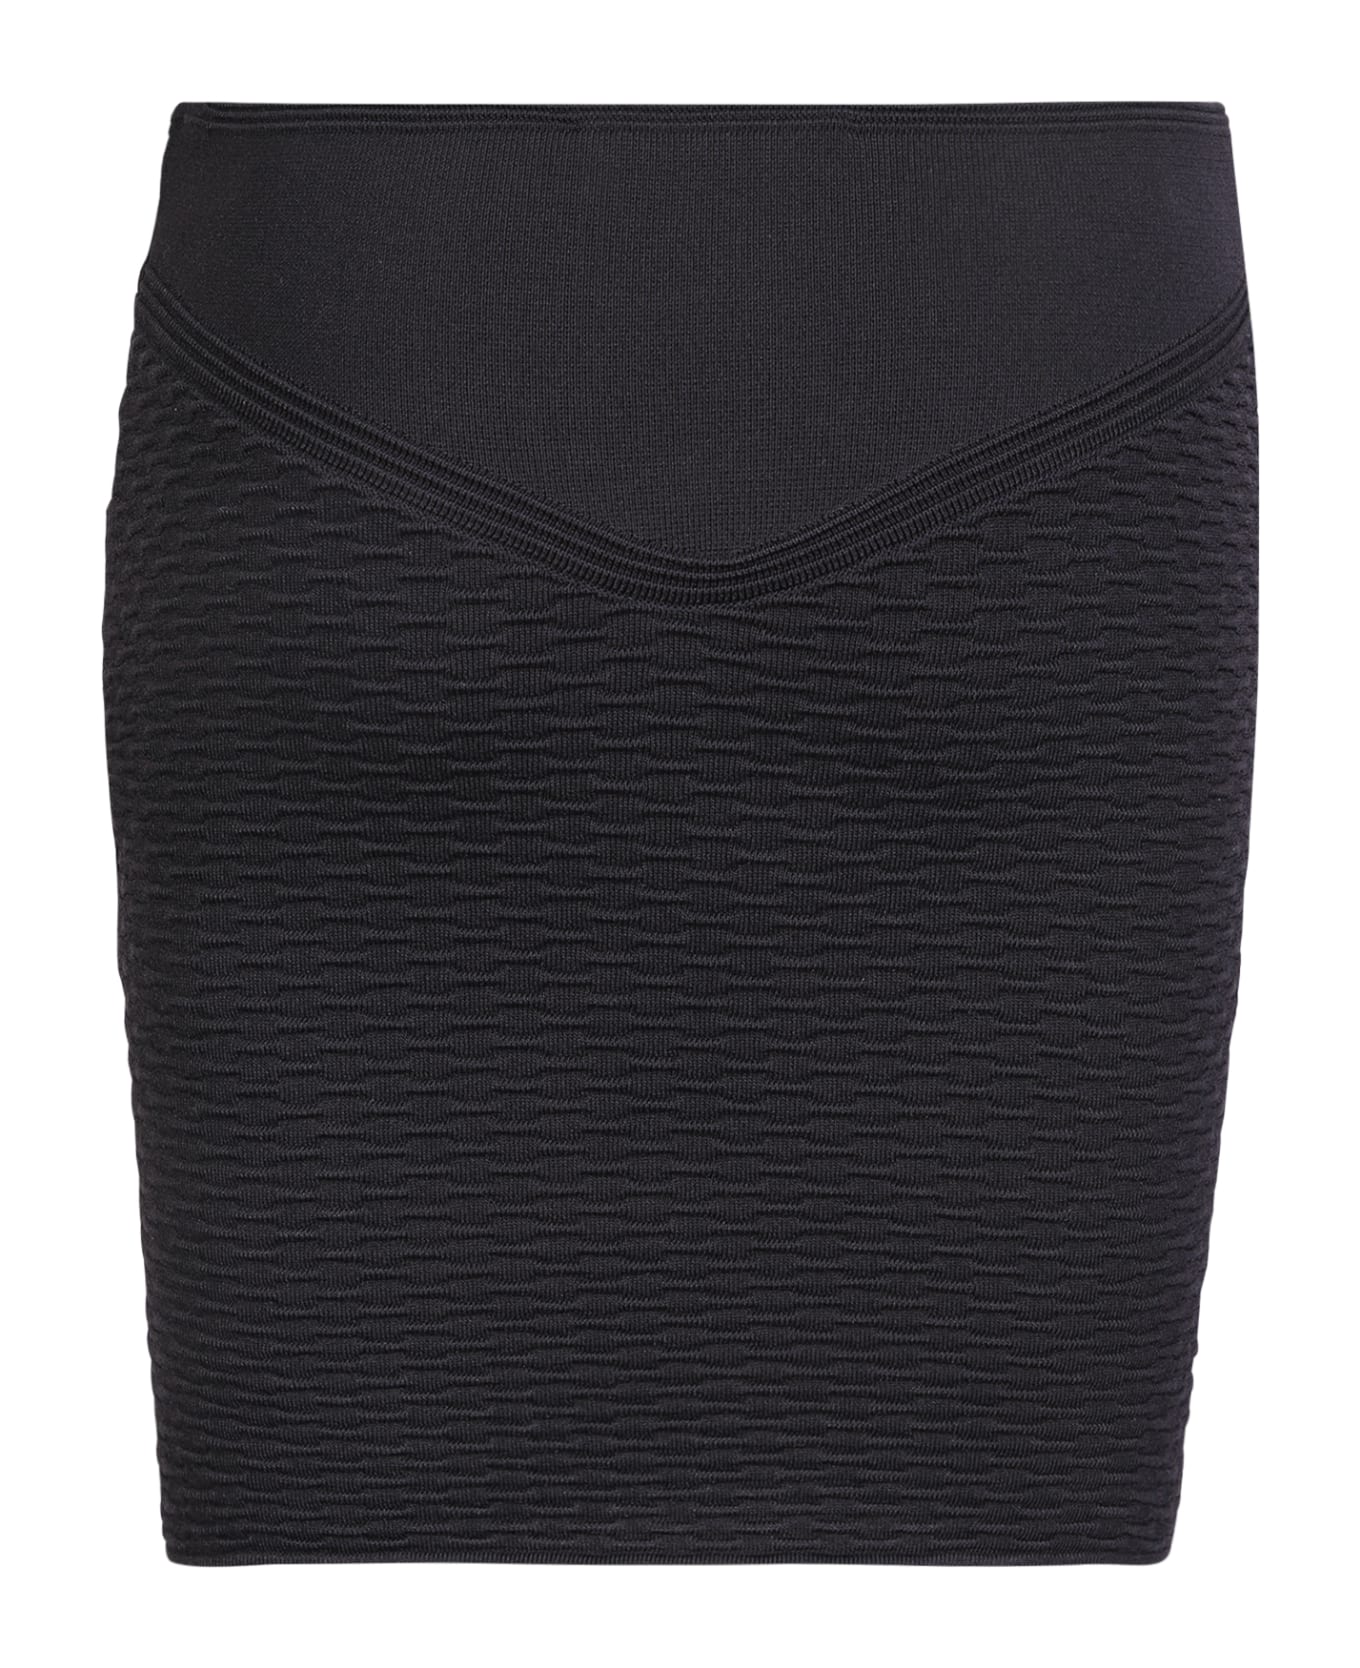 IRO Mini Skirt Black - Black